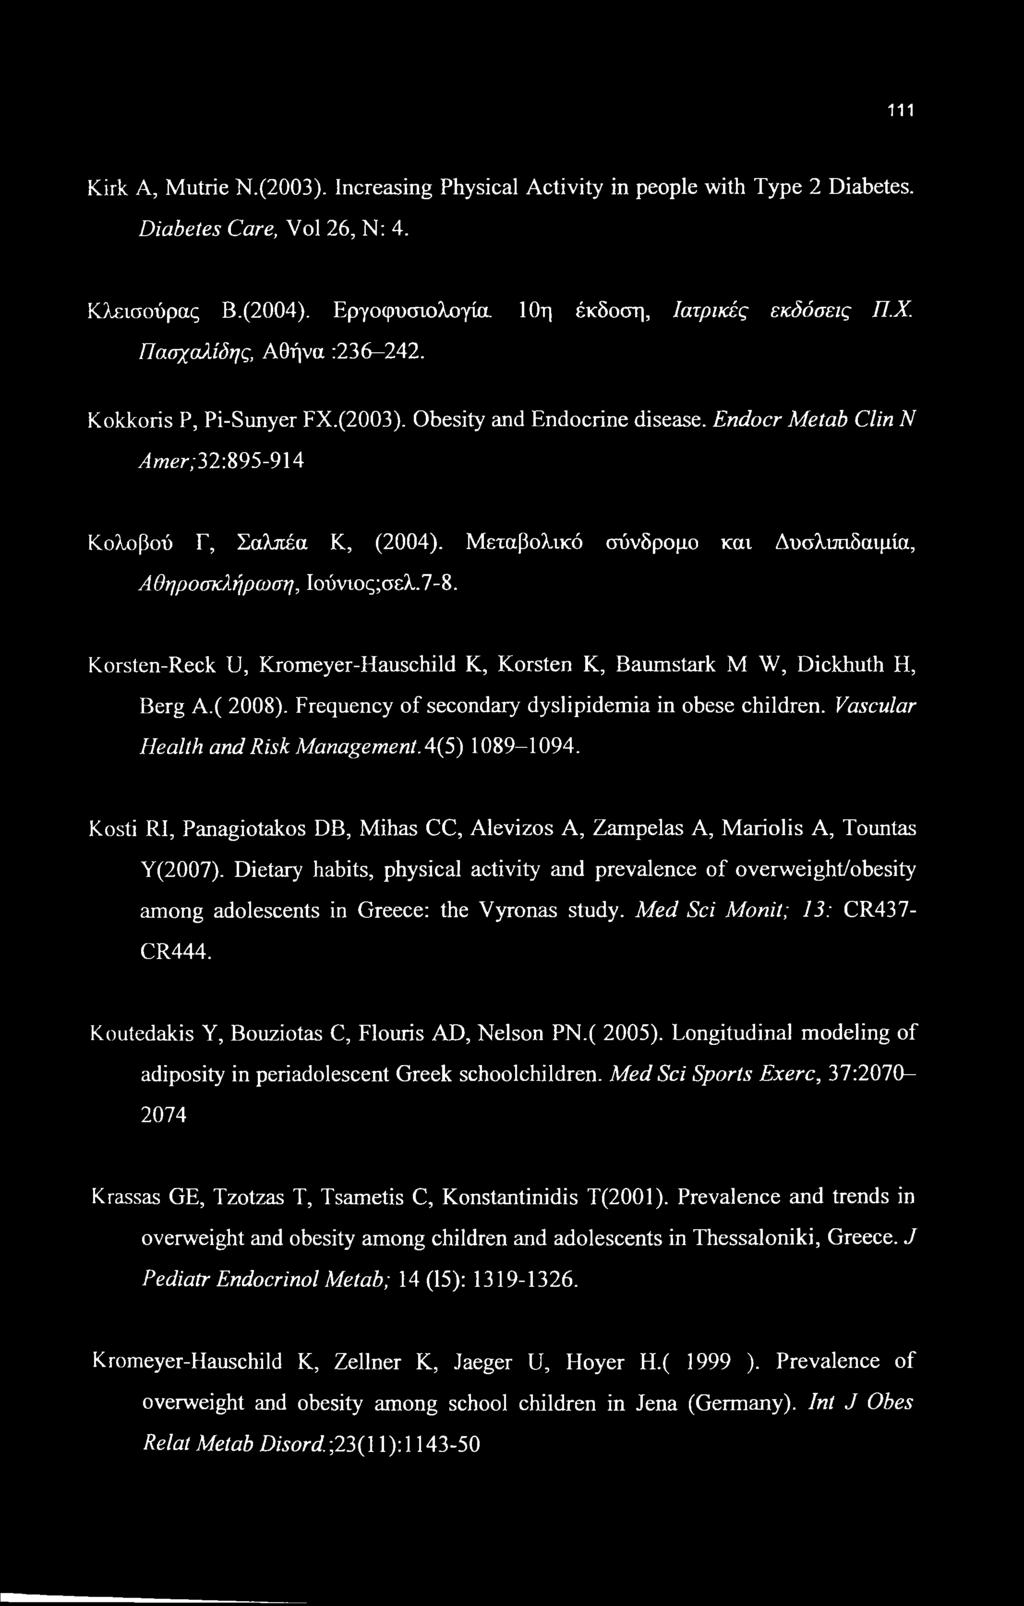 Μεταβολικό σύνδρομο και Δυσλιπιδαιμία, Αθηροσκλήρωση, Ιούνιος;σελ.7-8. Korsten-Reck U, Kromeyer-Hauschild Κ, Korsten Κ, Baumstark Μ W, Dickhuth Η, Berg Α.( 2008).